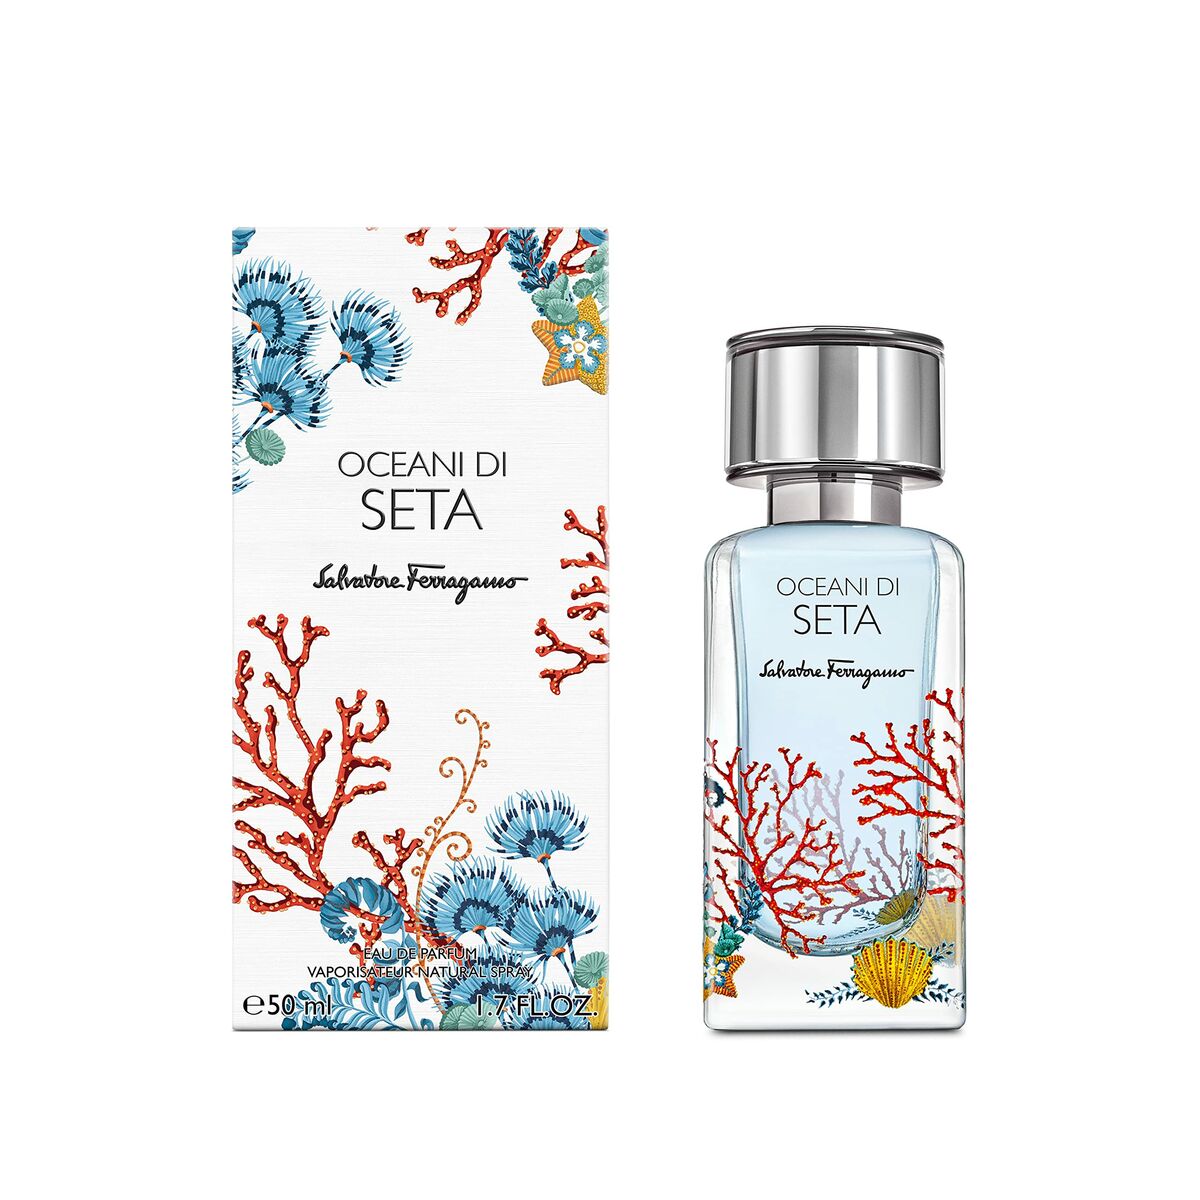 Kaufe Unisex-Parfüm Salvatore Ferragamo EDP Oceani di Seta 50 ml bei AWK Flagship um € 51.00